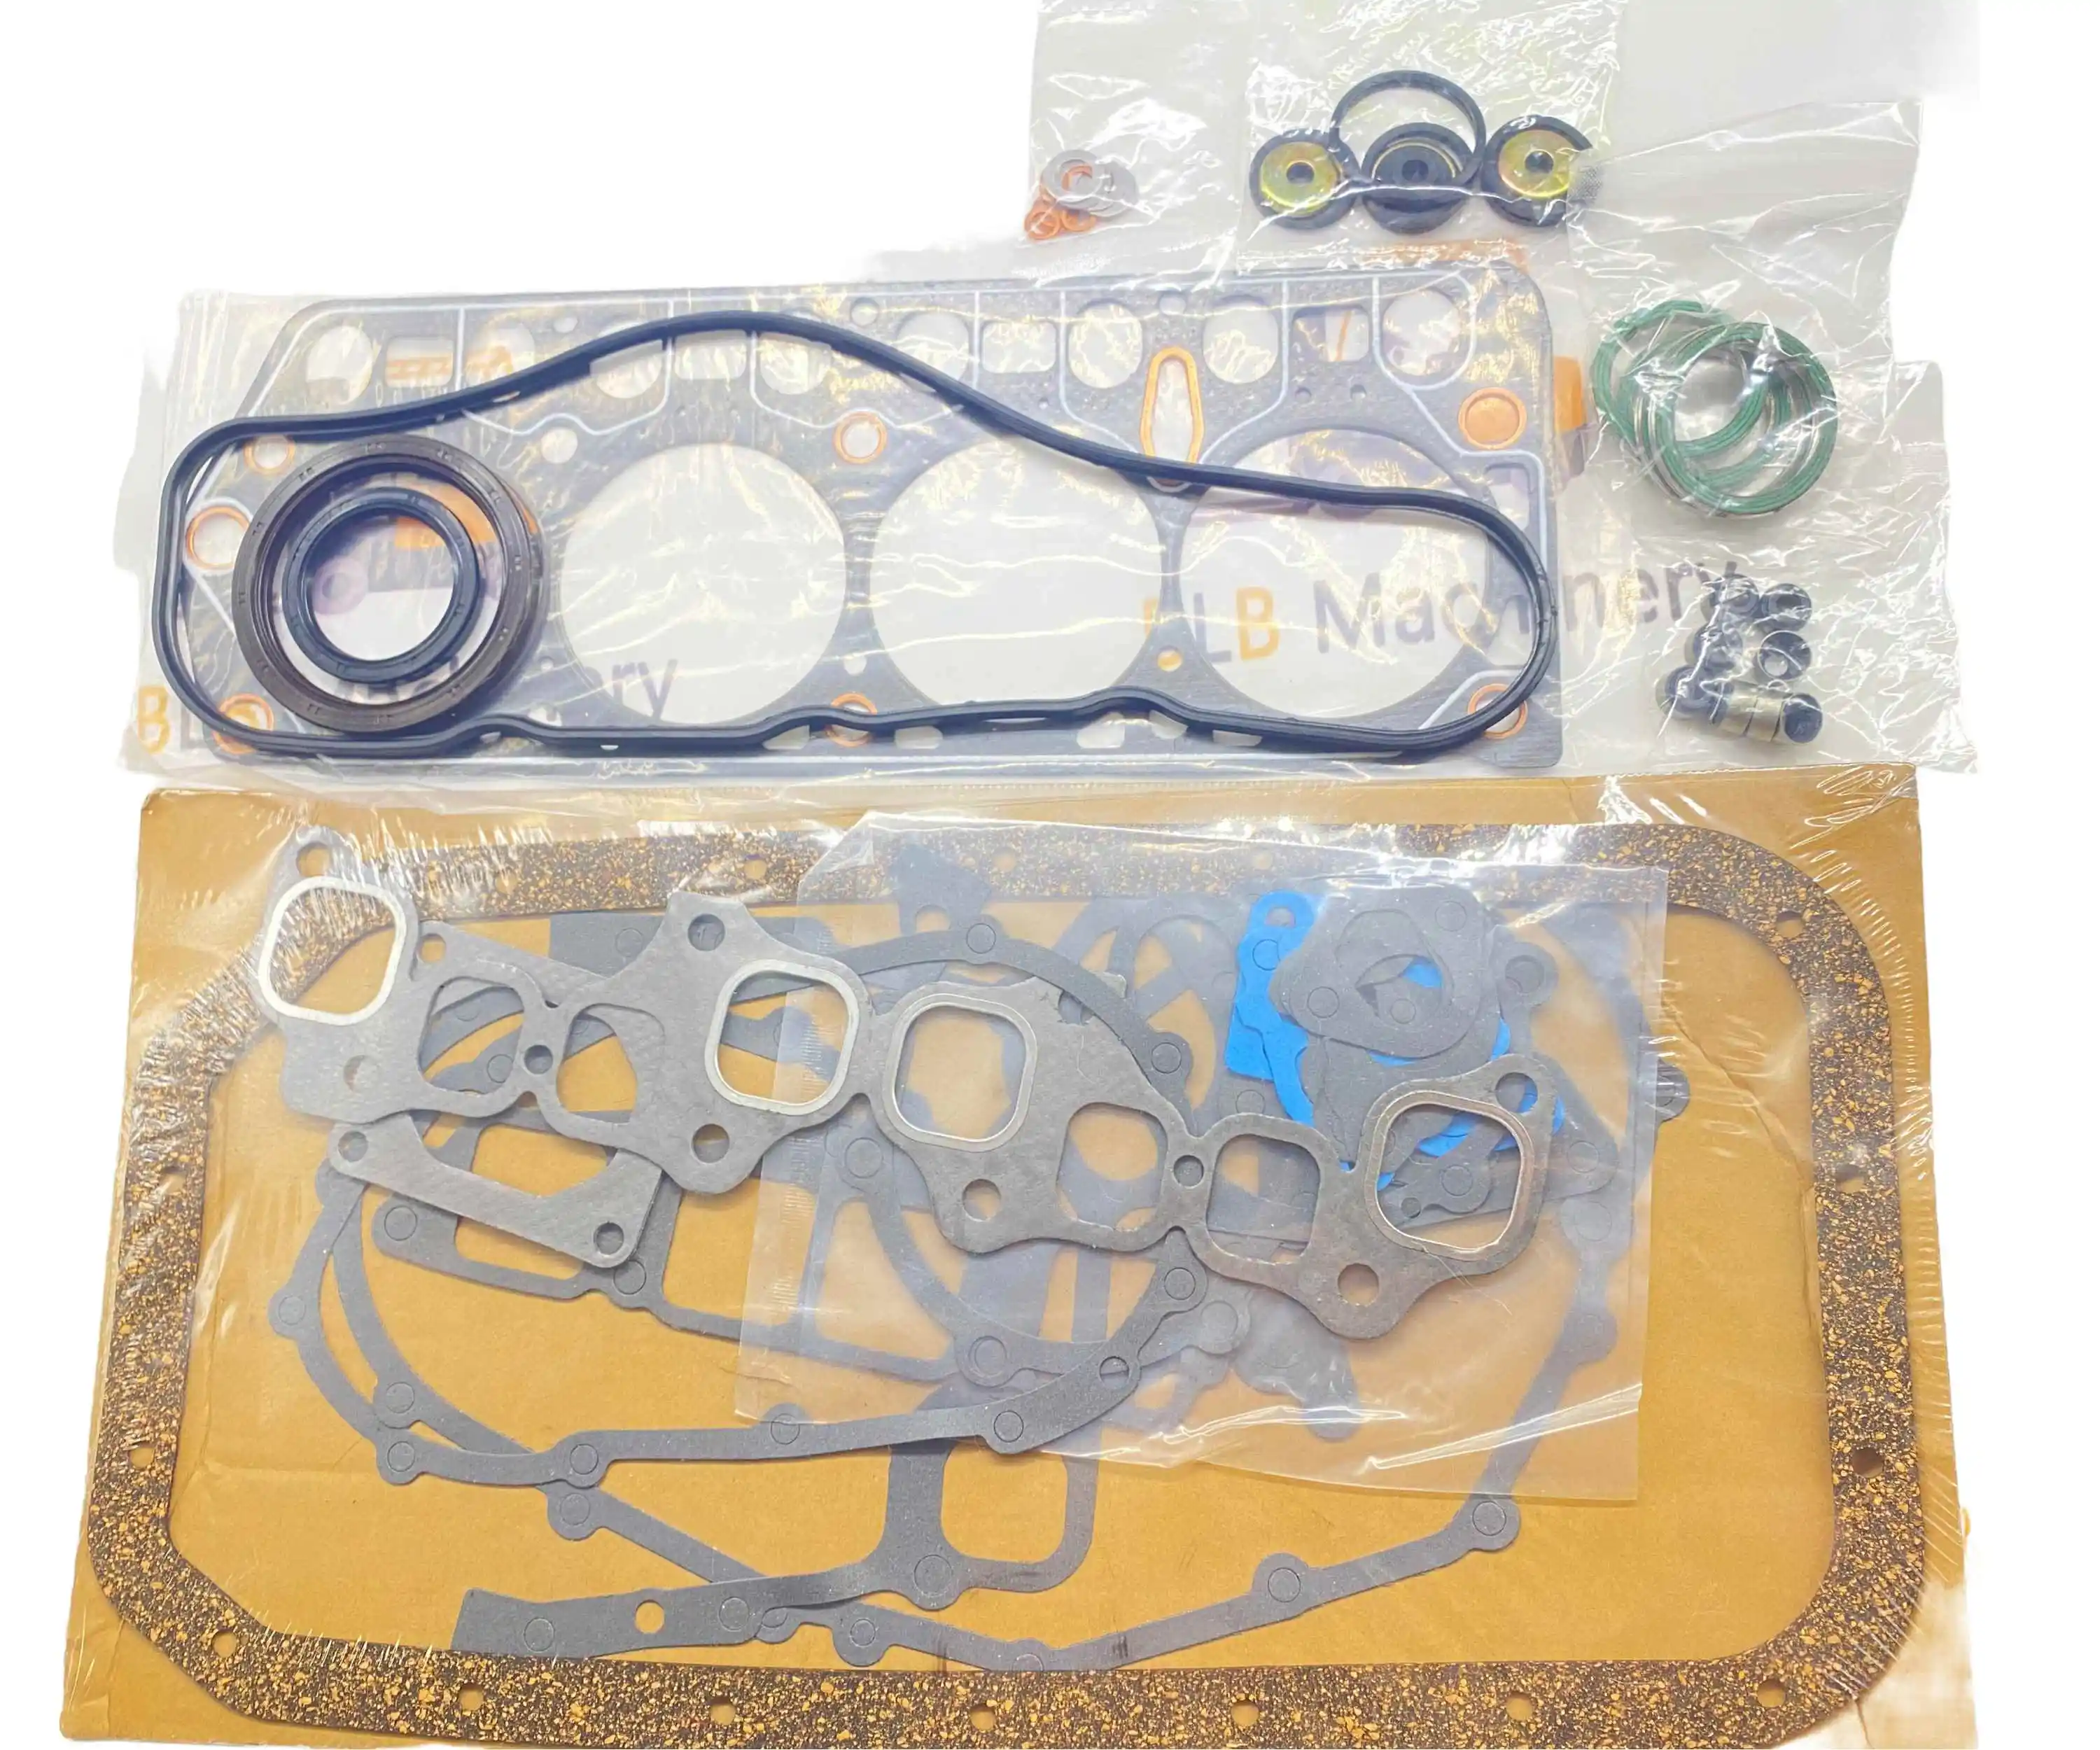 Комплект прокладок для деталей погрузчика 4Y Engine 8FGU25 S/S Toyota 04111-20420-71